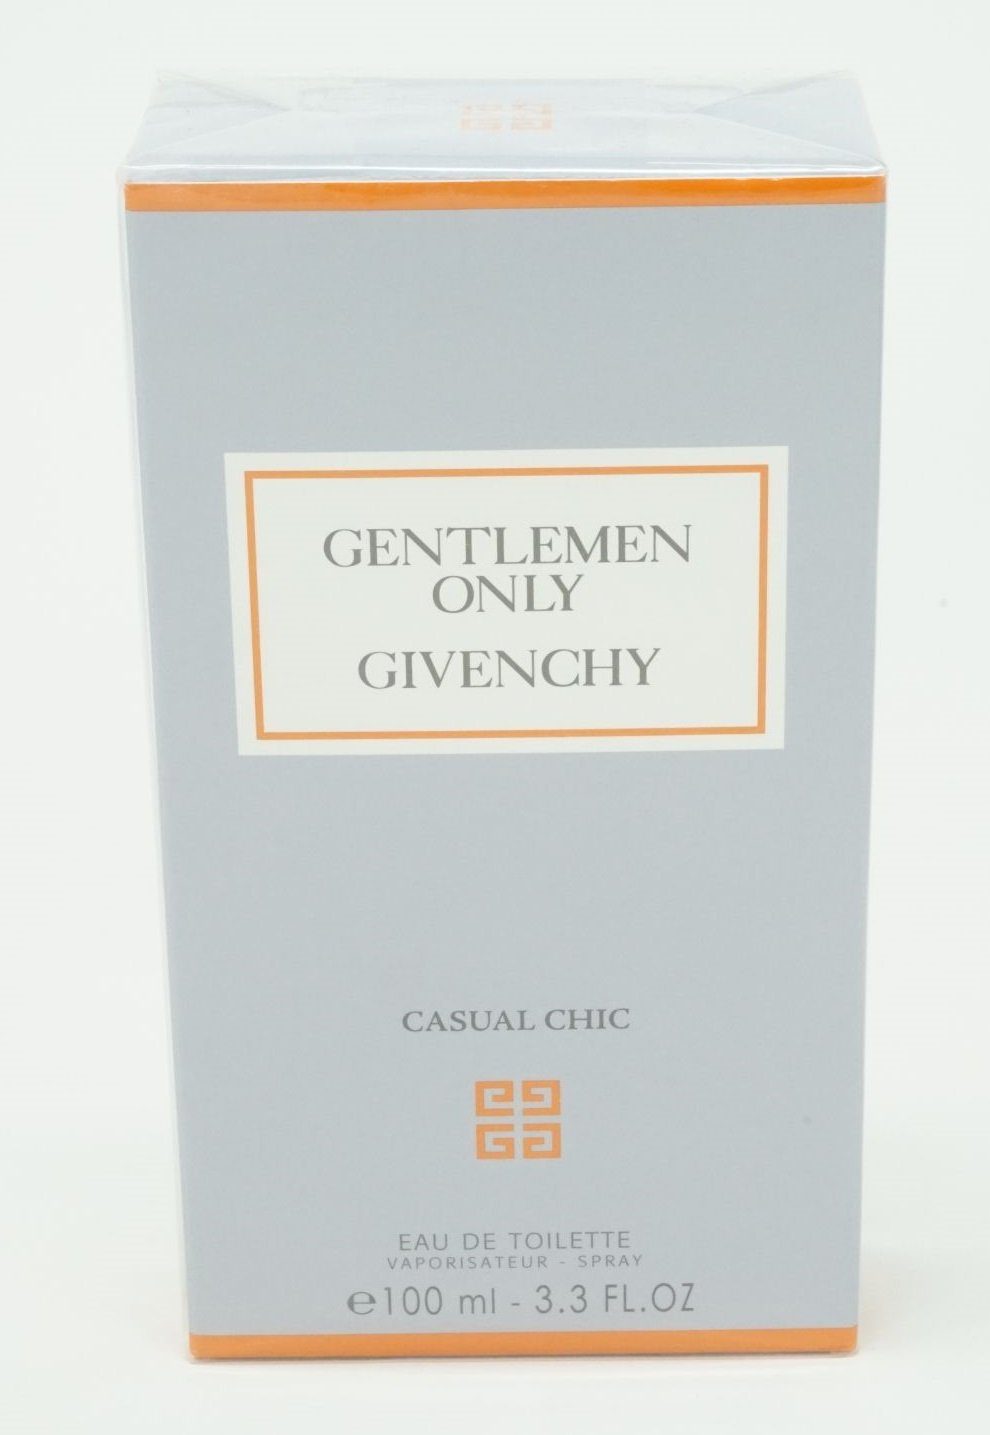 GIVENCHY Eau de Toilette Givenchy Gentleman Only Casual Chic Eau de Toilette 100 ml | Eau de Toilette